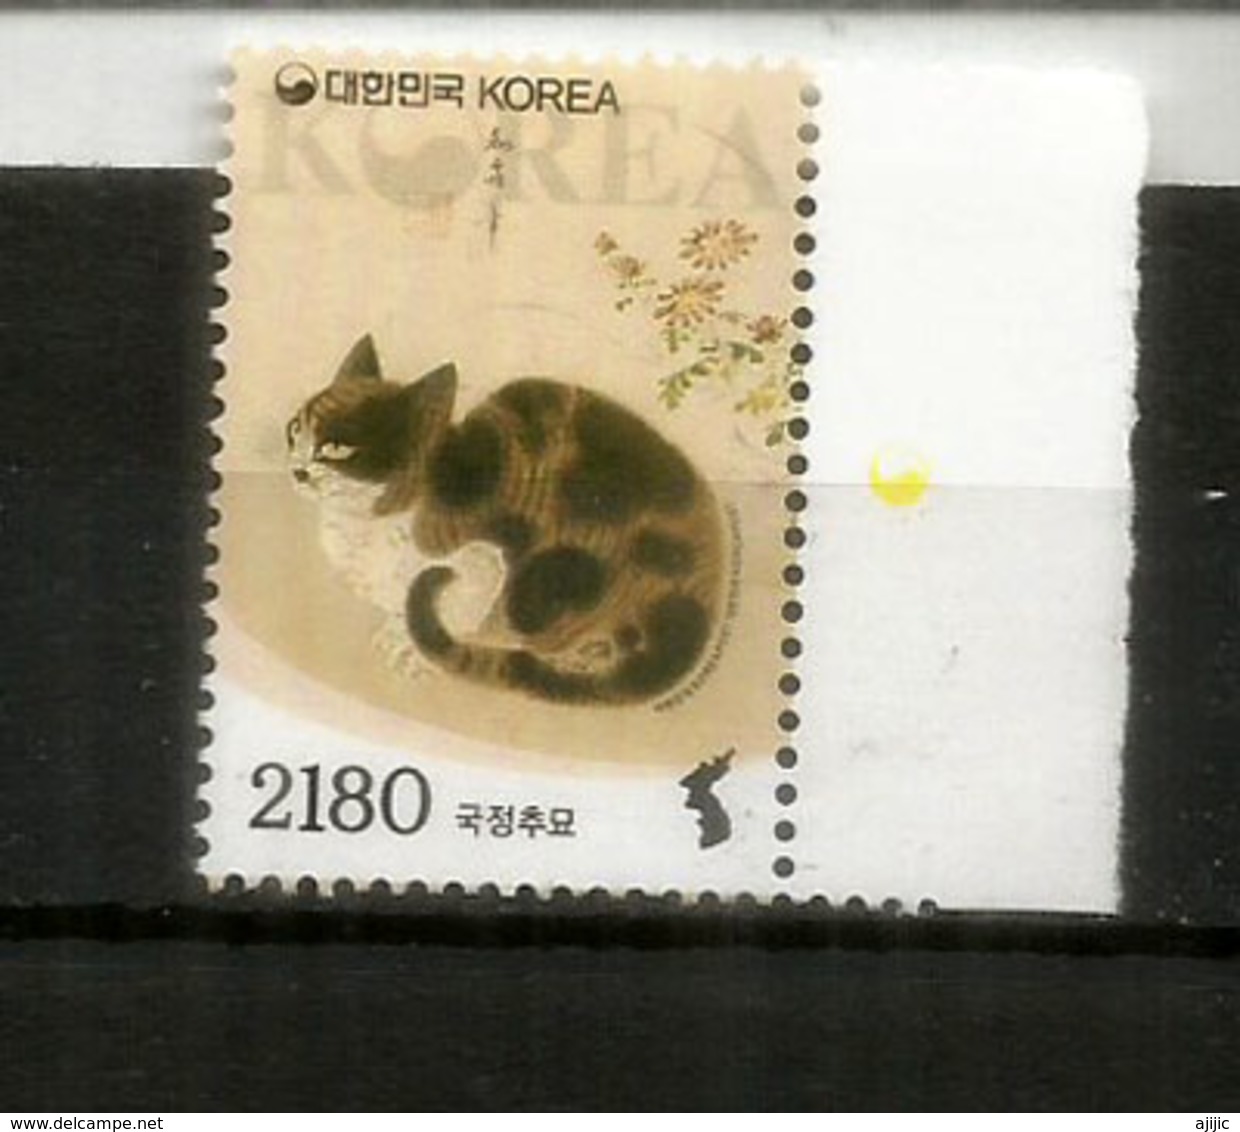 Myokakdo Cat (South Korea) 2019. High Face Value For Registered Letter. Mint / Neuf ** - Hauskatzen